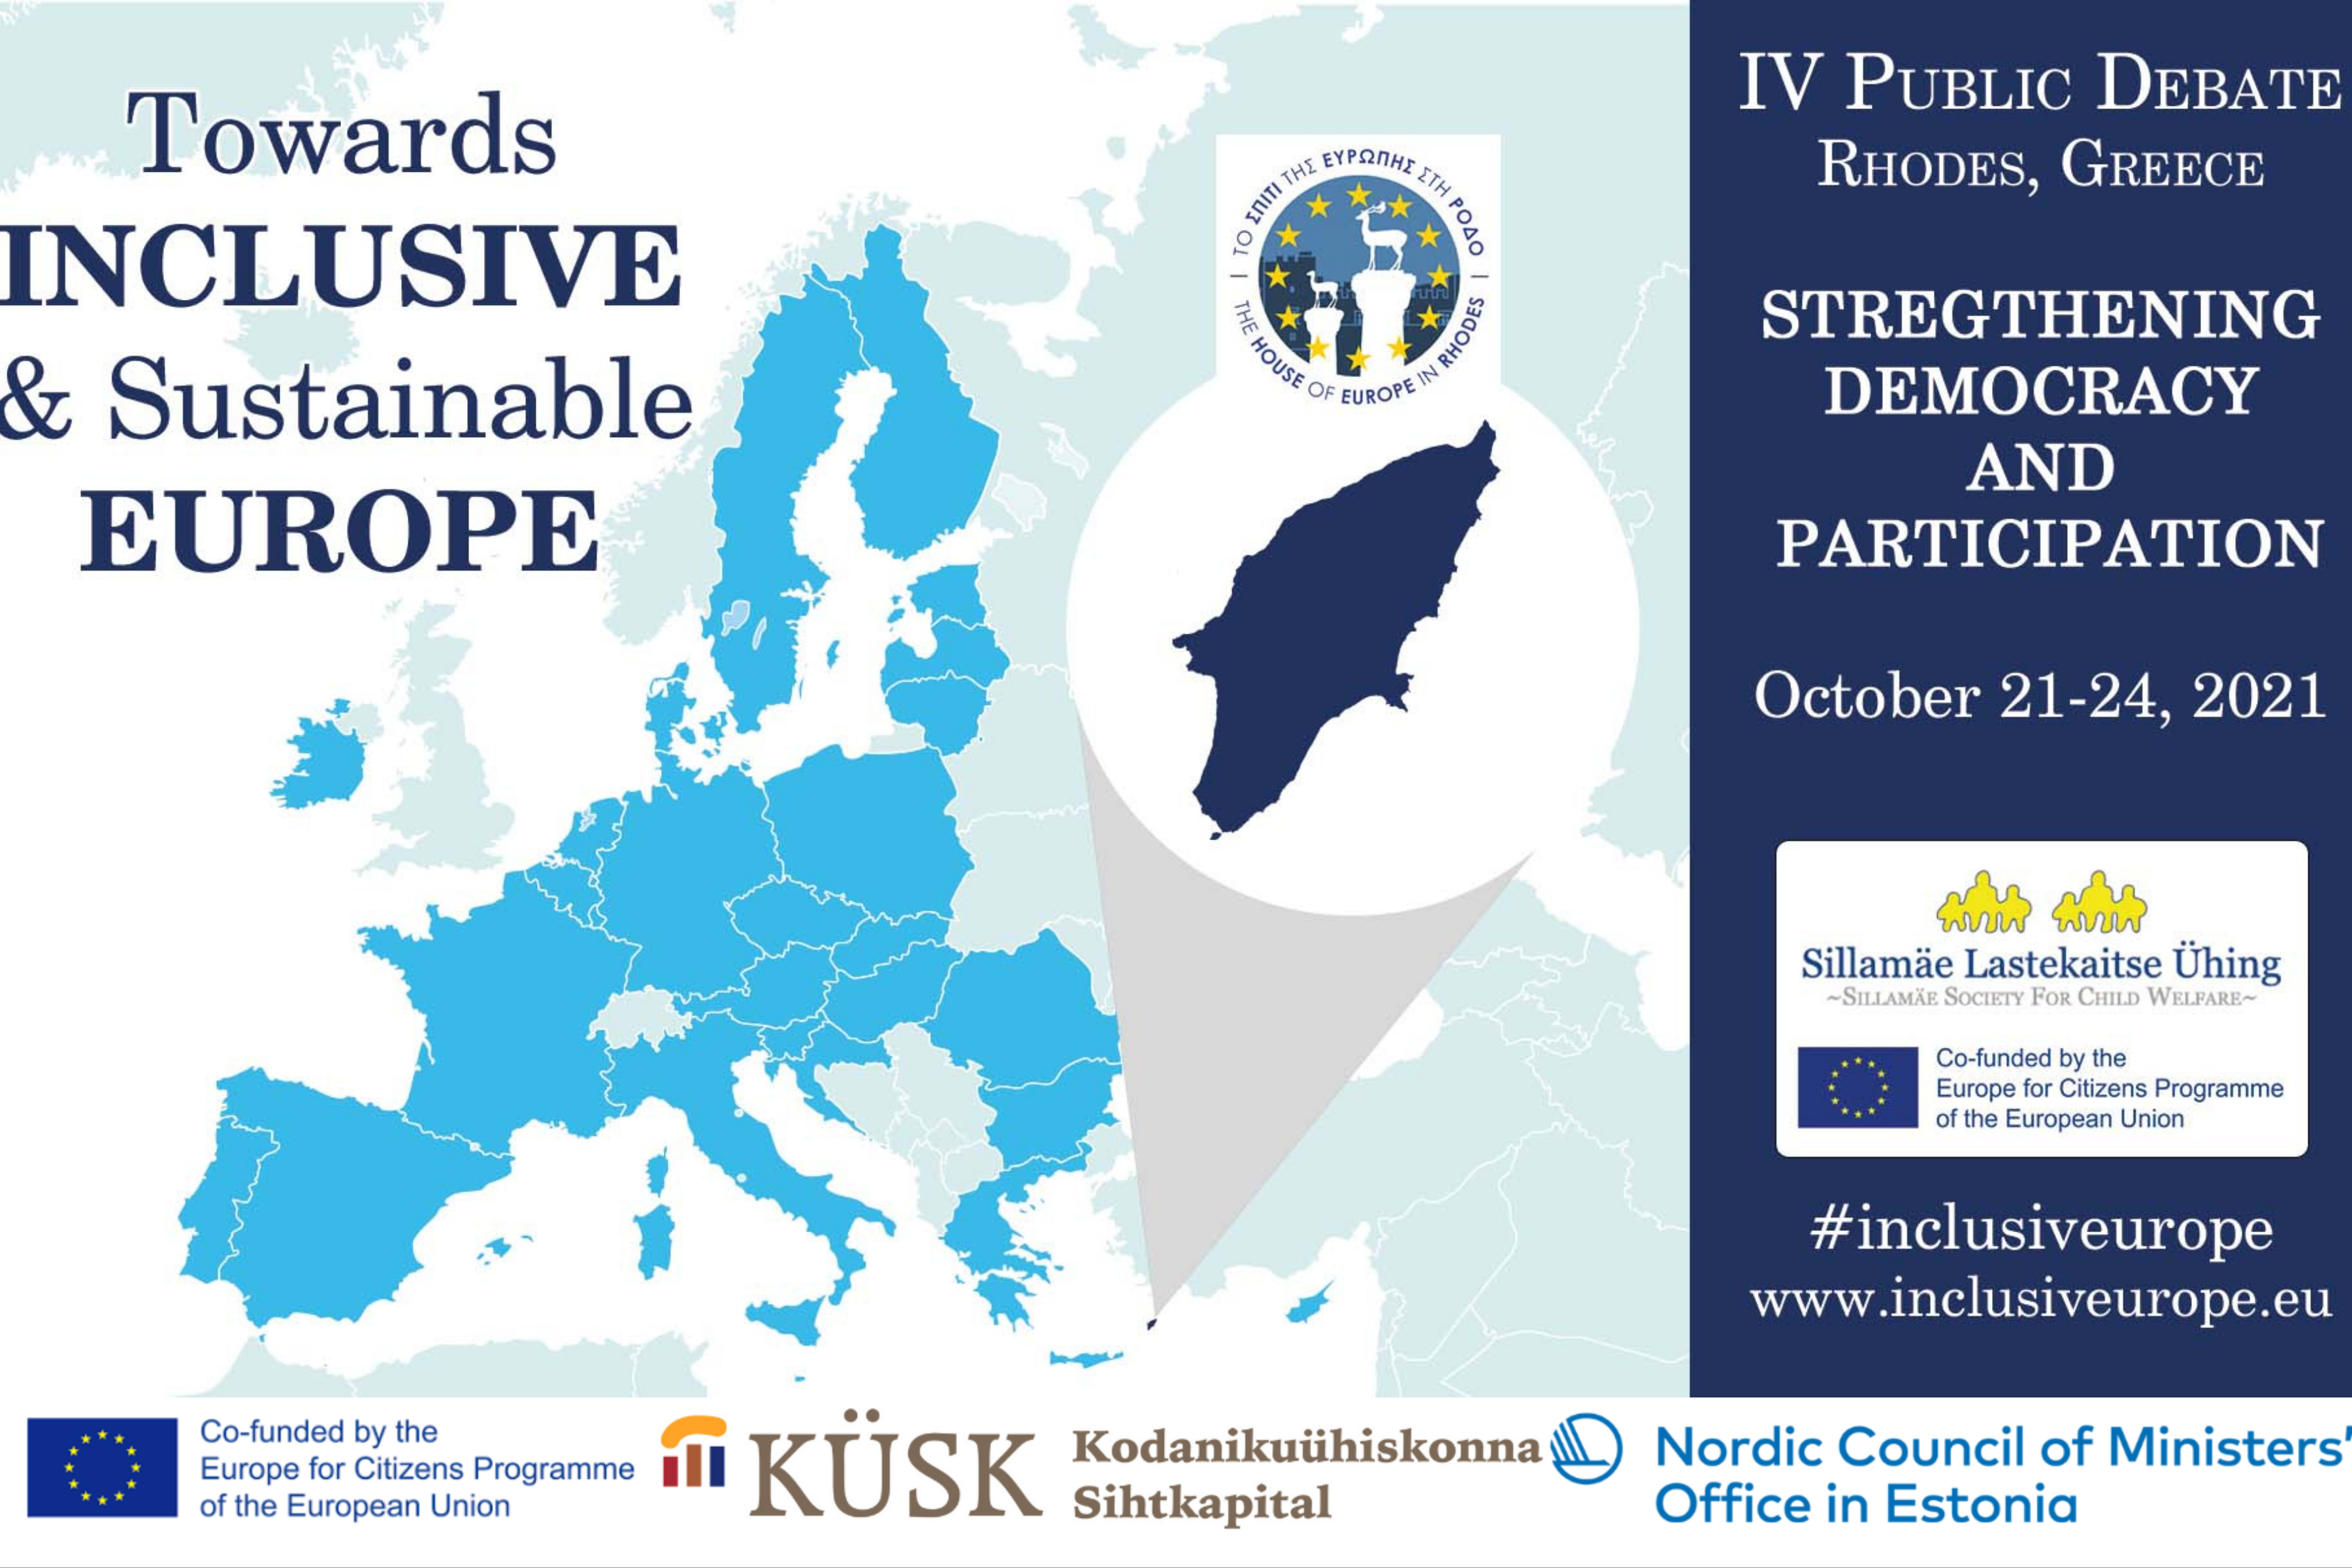 IV Öffentliche Debatte: “Stärkung von Demokratie und Partizipation” auf Rhodos 21. bis 24. Oktober